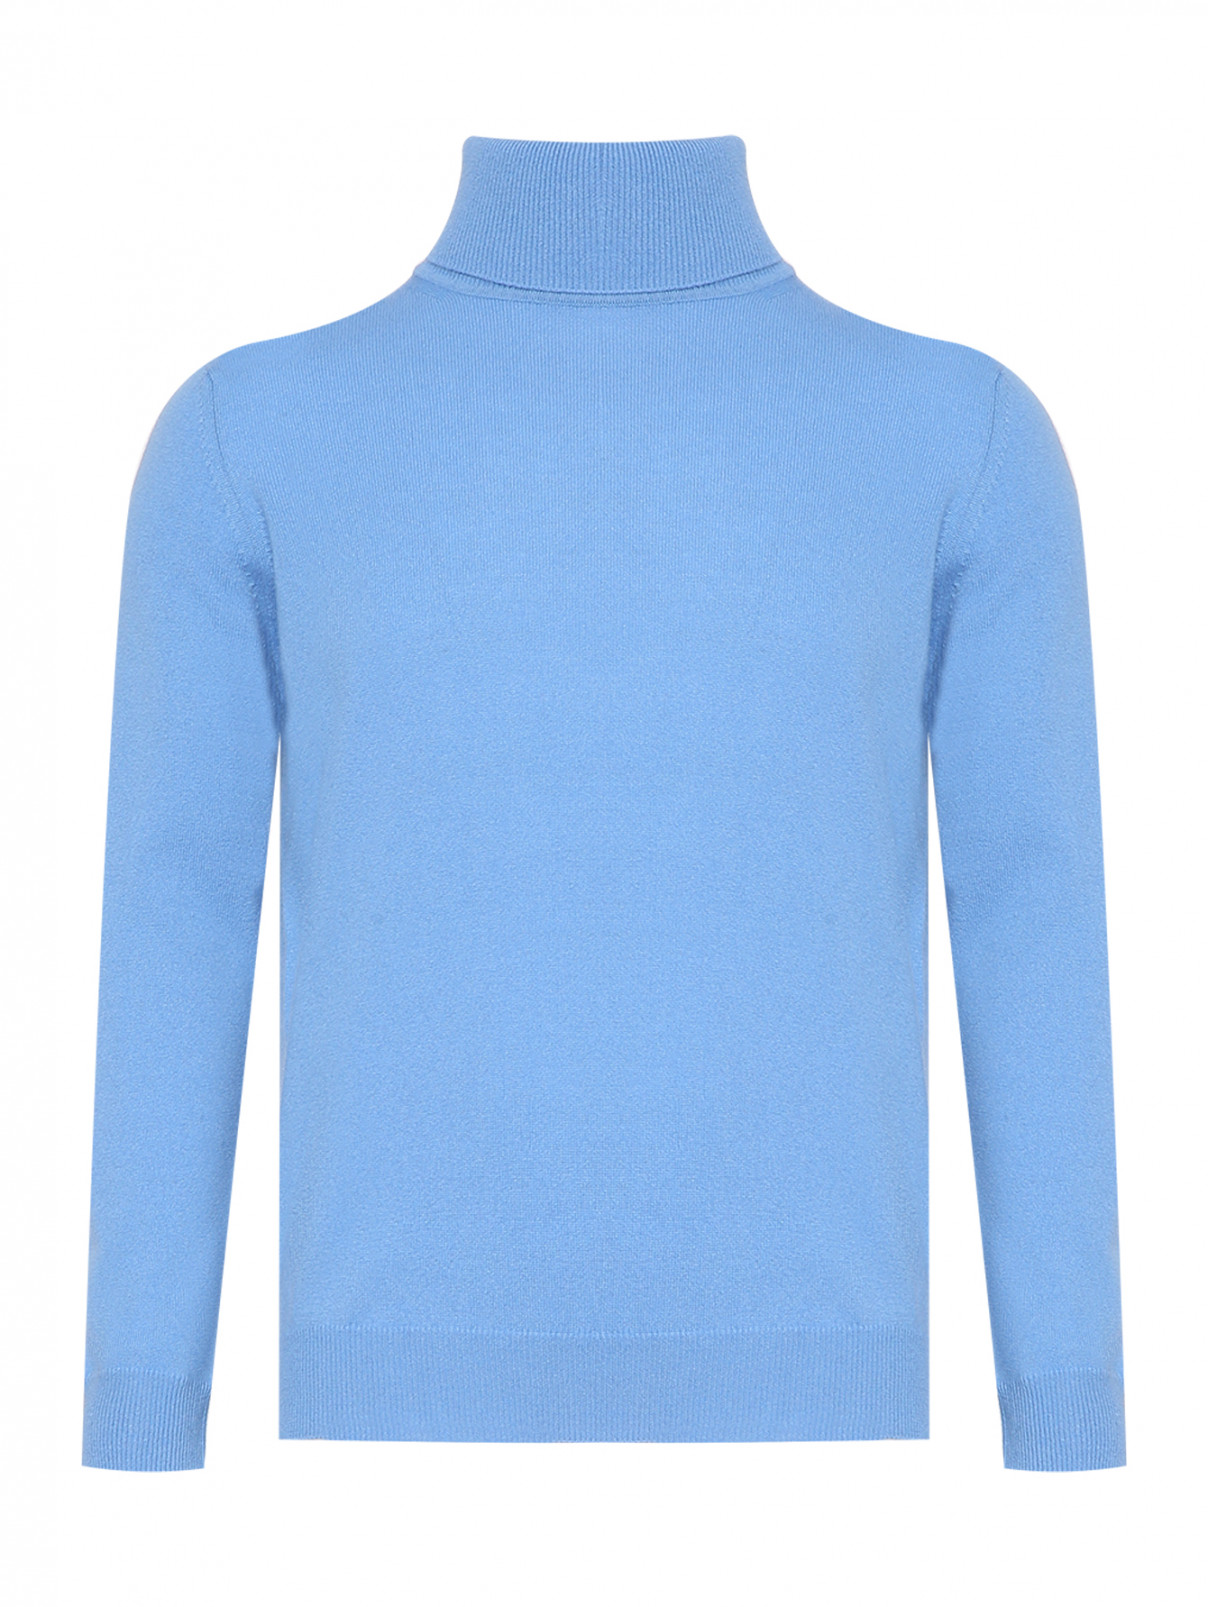 Базовый свитер из кашемира Kangra Cashmere  –  Общий вид  – Цвет:  Синий